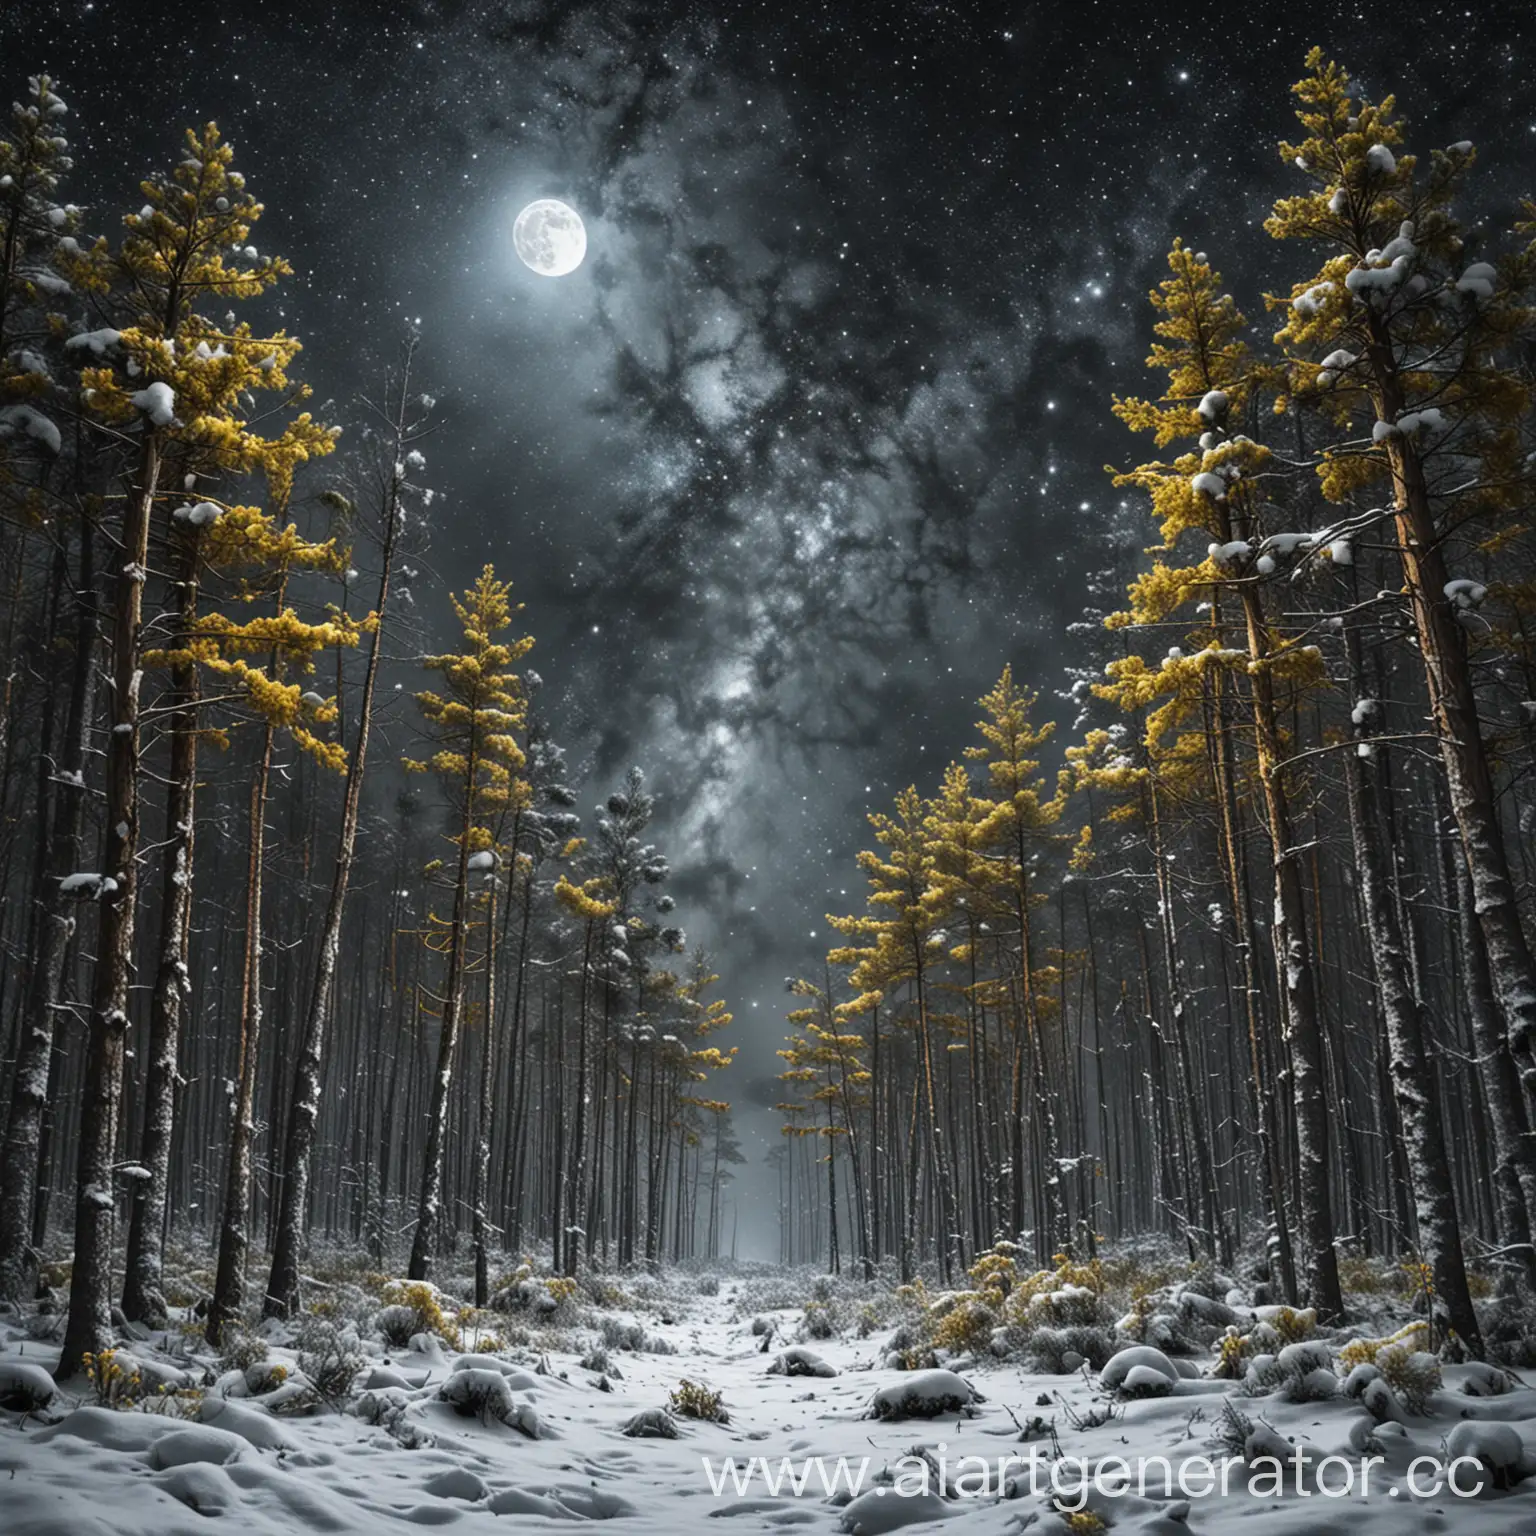 Ночь, снежный непроходимый хвойный лес, снег блестит от звёзд, две луны, одна жёлтая меньшая и вторая большая серебристая, вид сверху